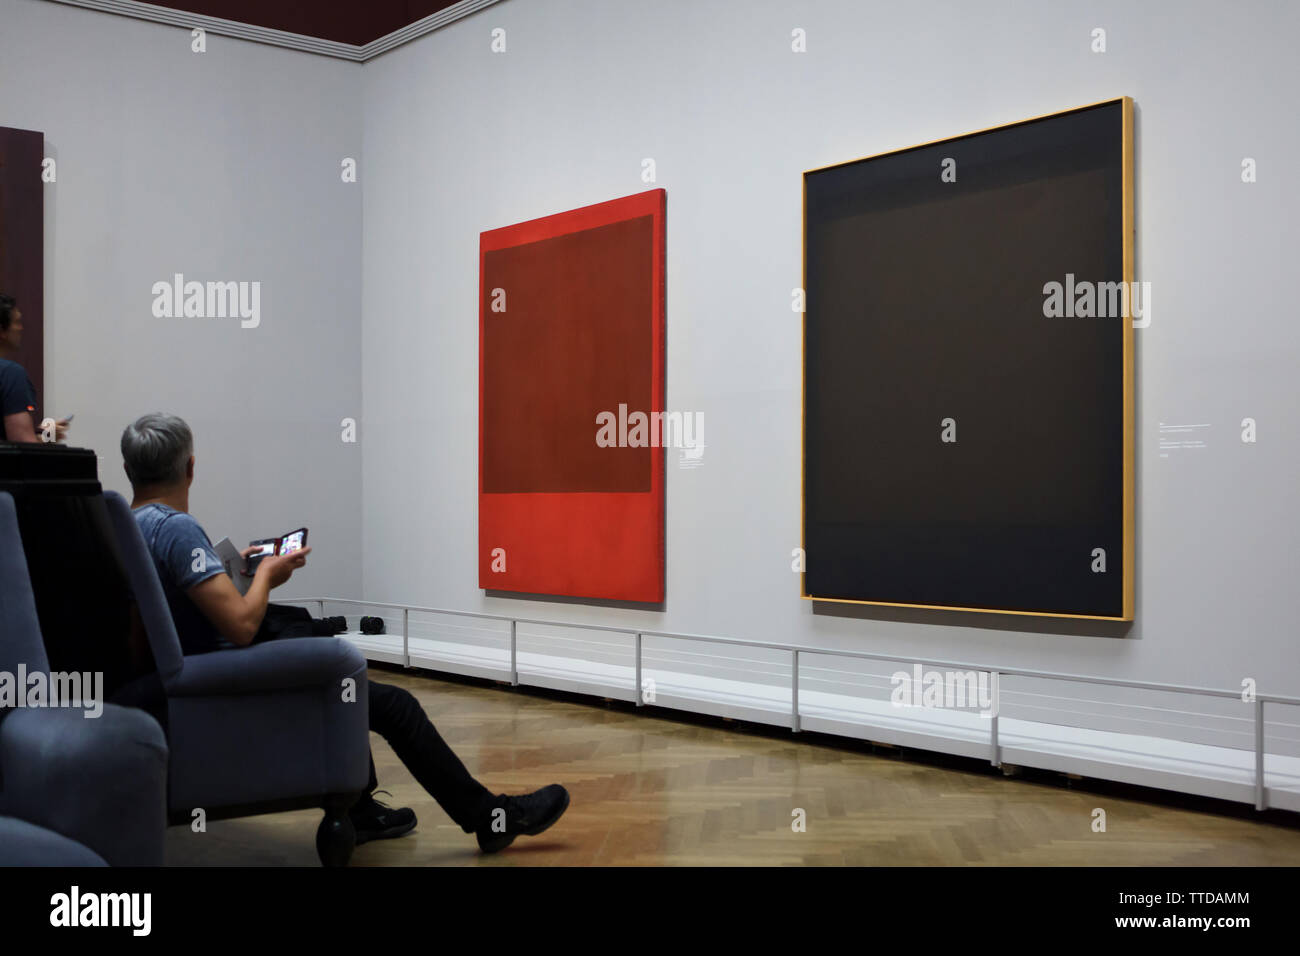 Los visitantes delante de la pintura abstracta americana pintor expresionista Mark Rothko muestra en su exposición retrospectiva en el Kunsthistorisches Museum (Museo de Historia del Arte) en Viena, Austria. La exposición durará hasta el 30 de junio de 2019. Foto de stock